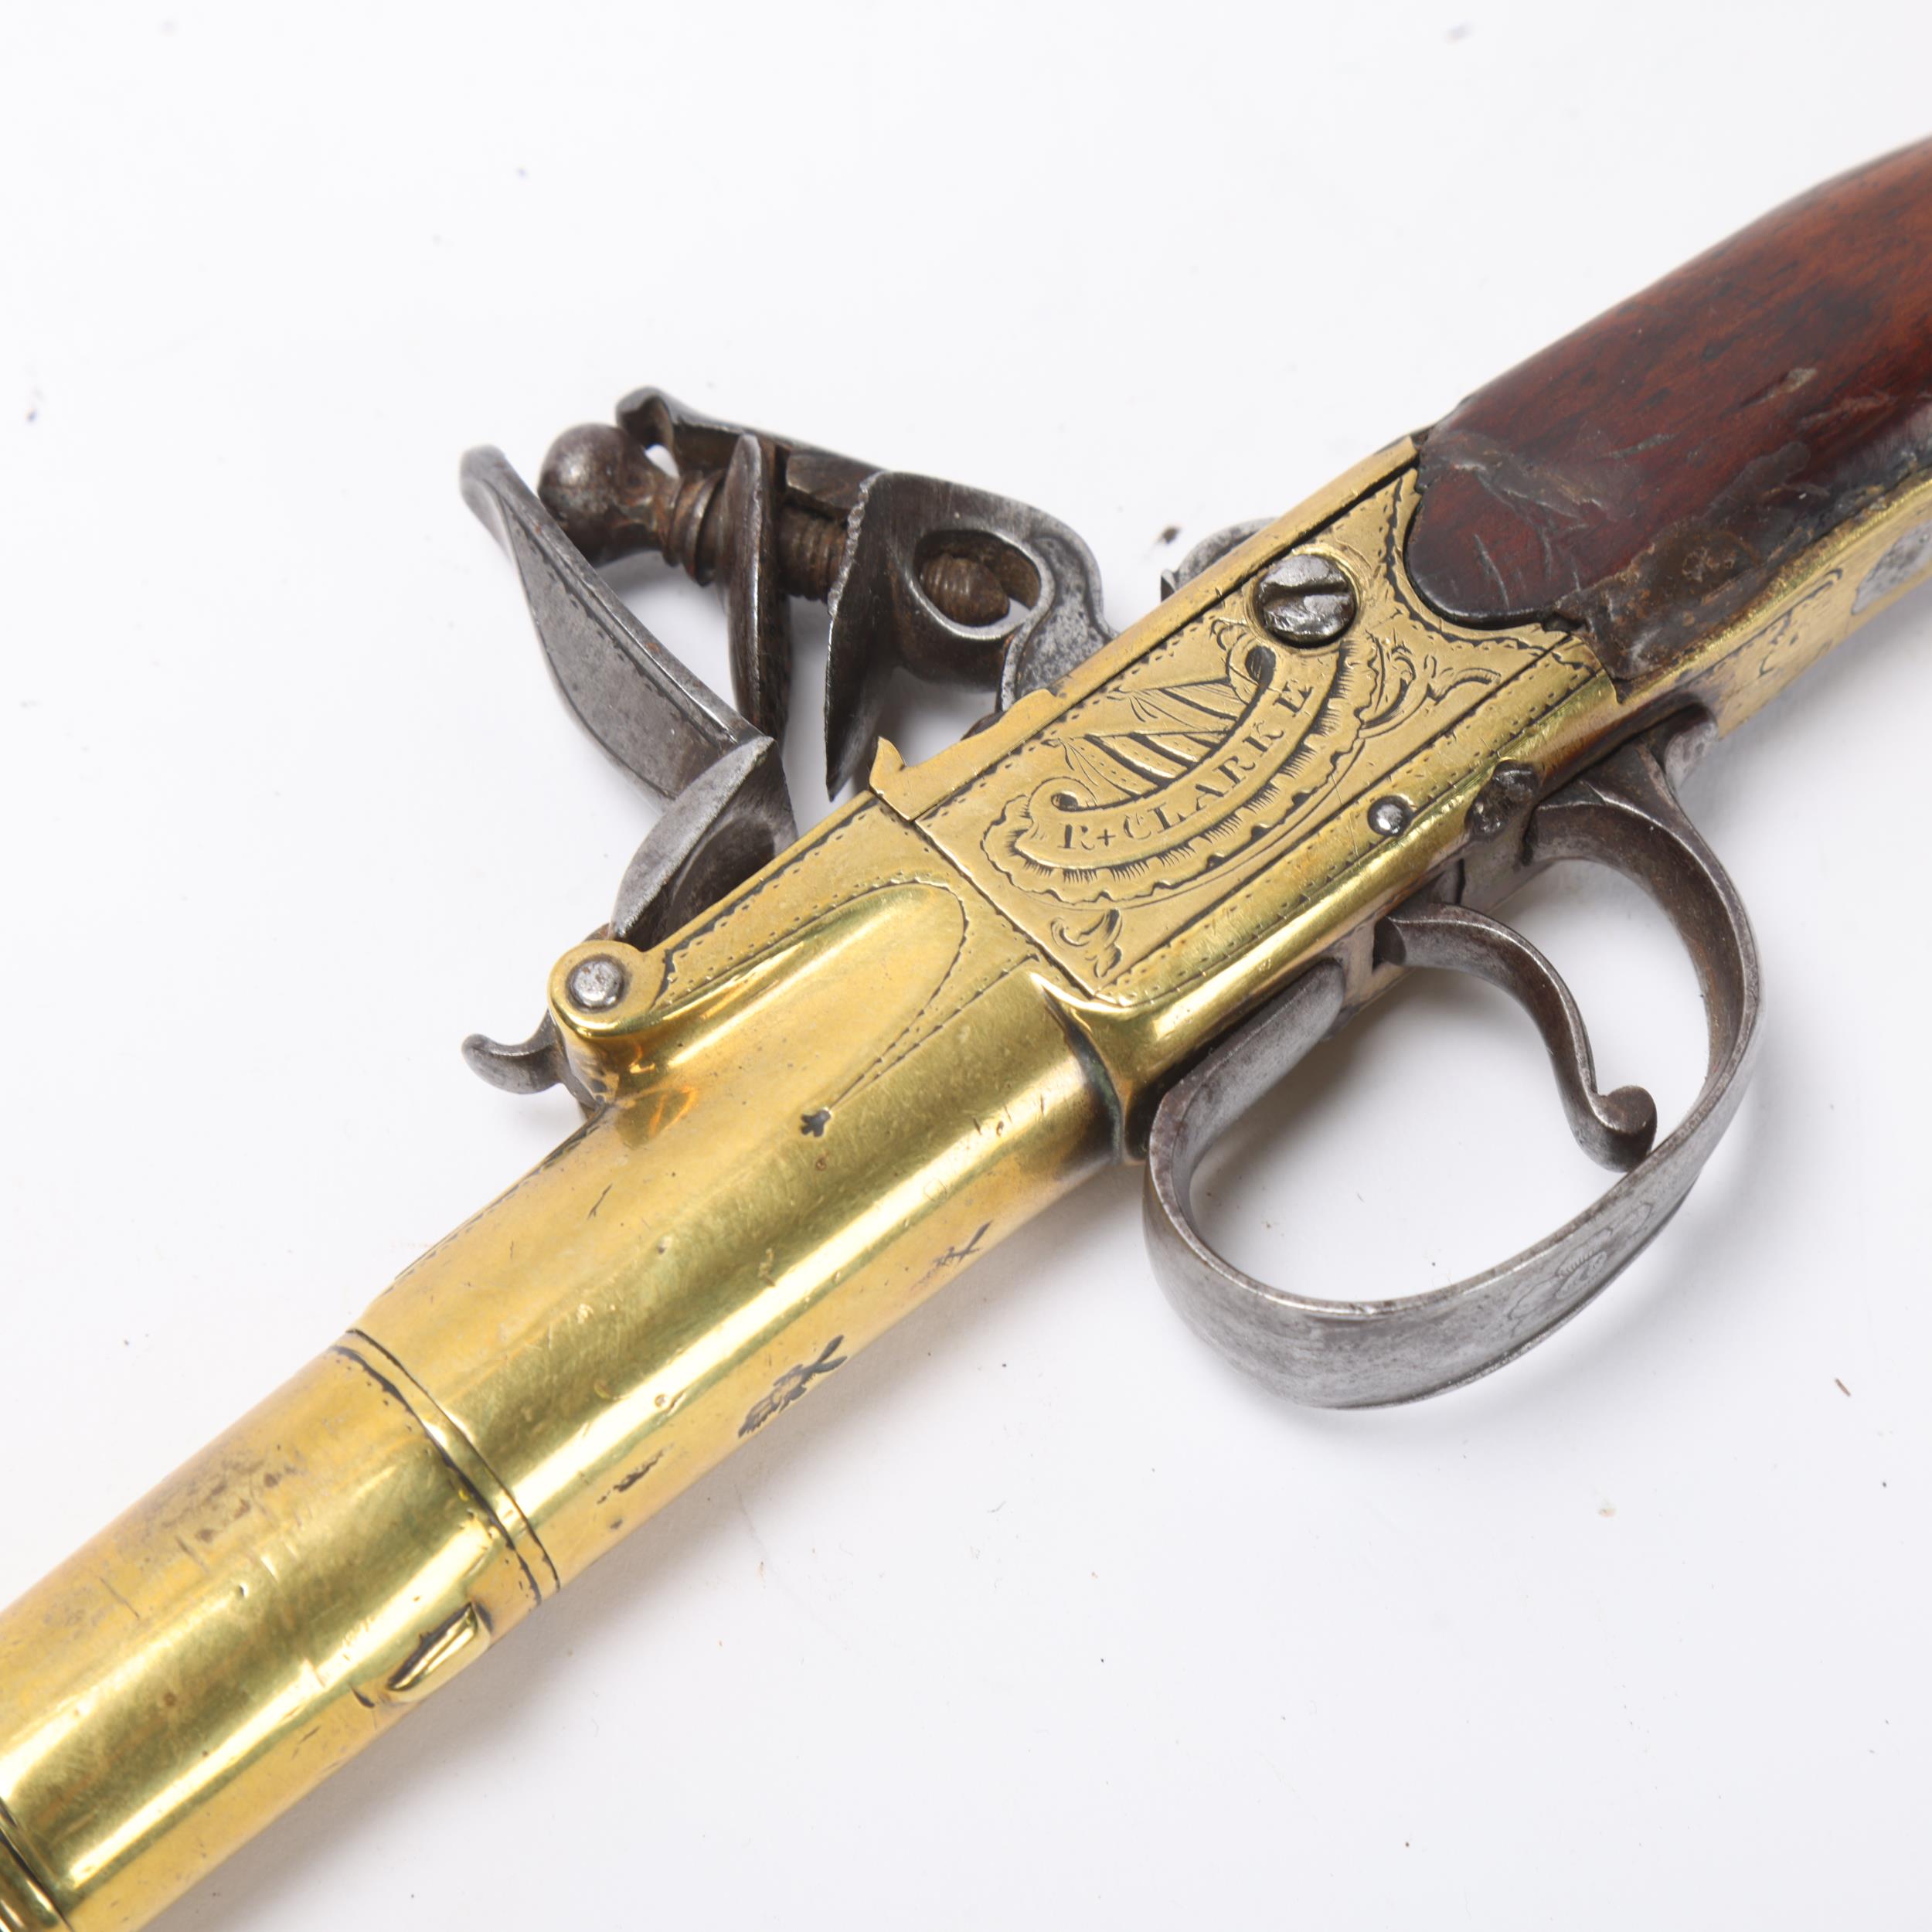 An 18th century brass cannon barrel flintlock pistol, by Clarke of Cheapside London, serial no. 102, - Image 2 of 3